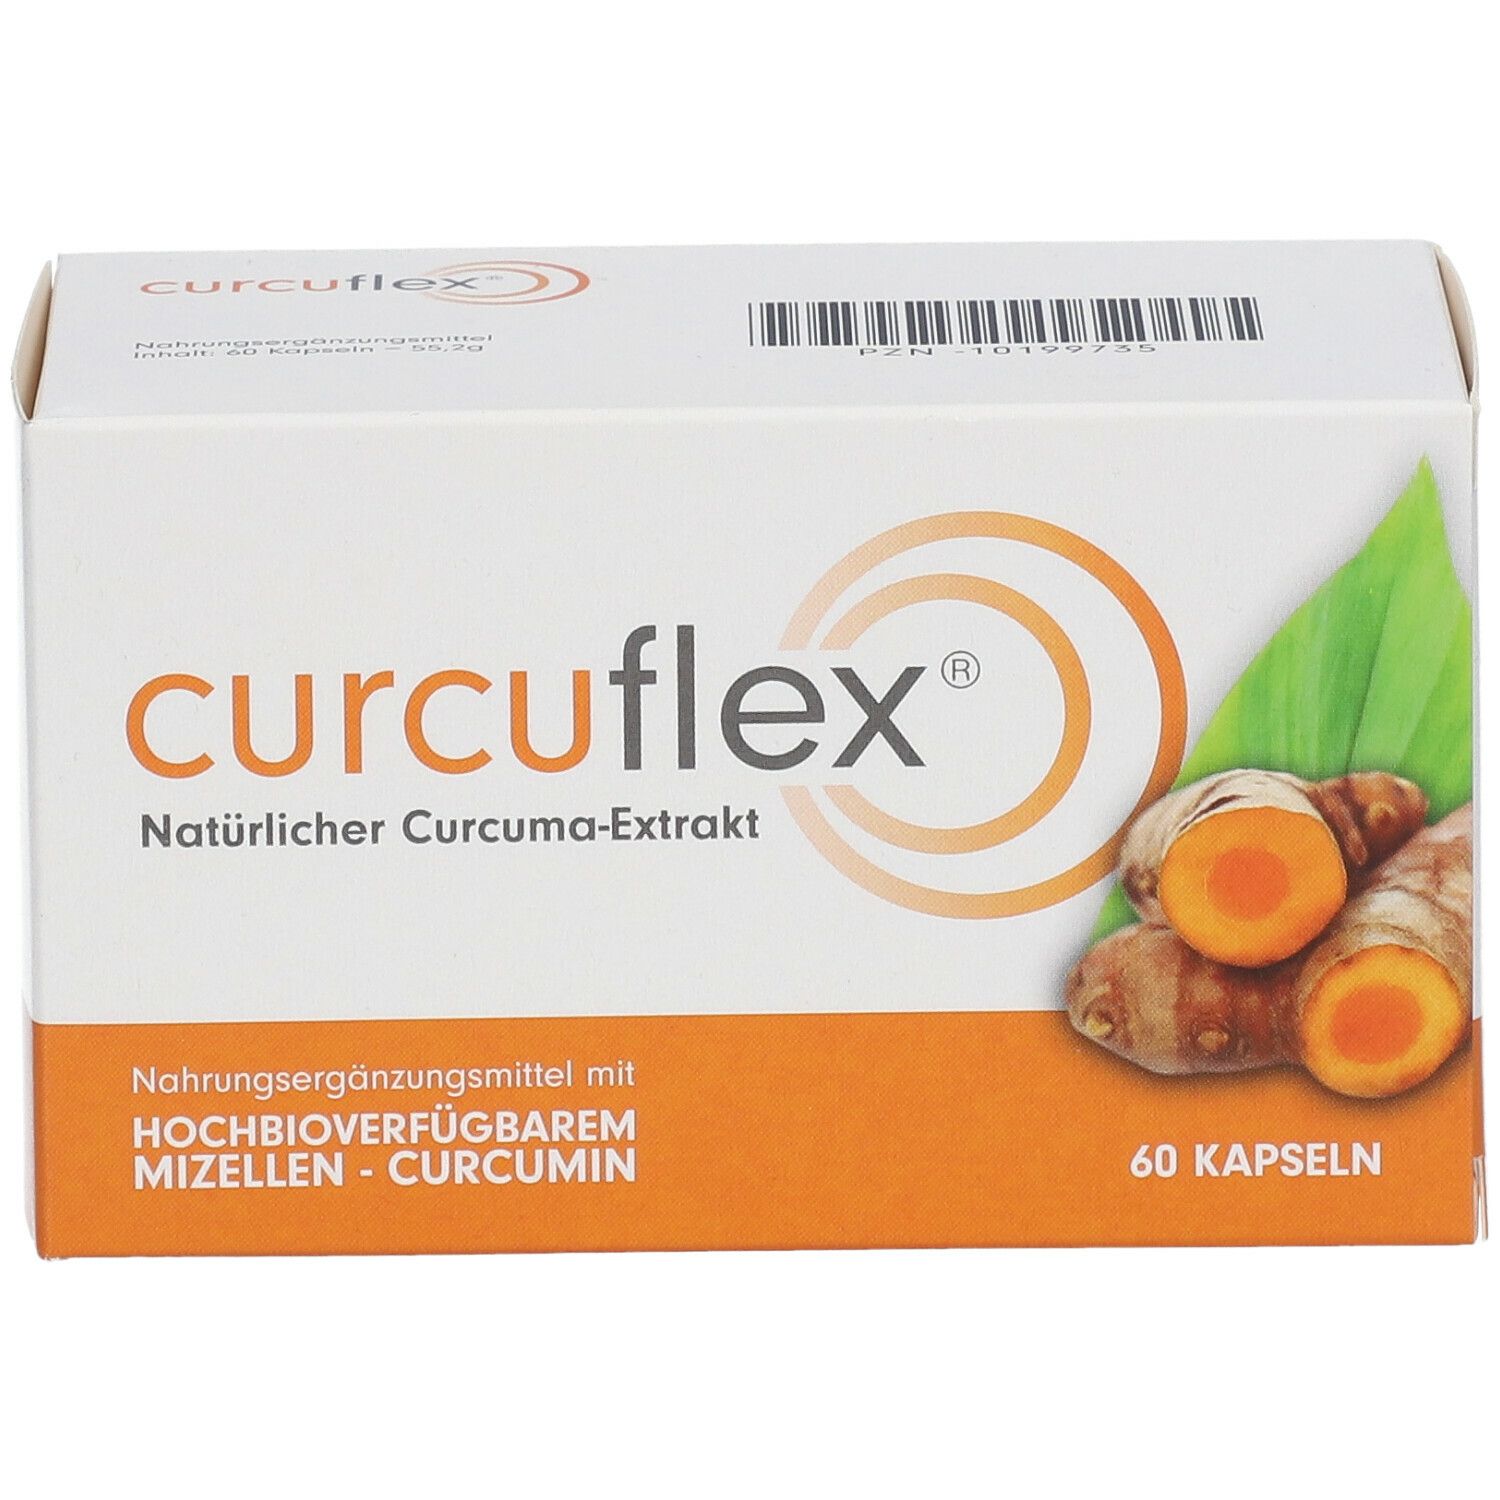 curcuflex®